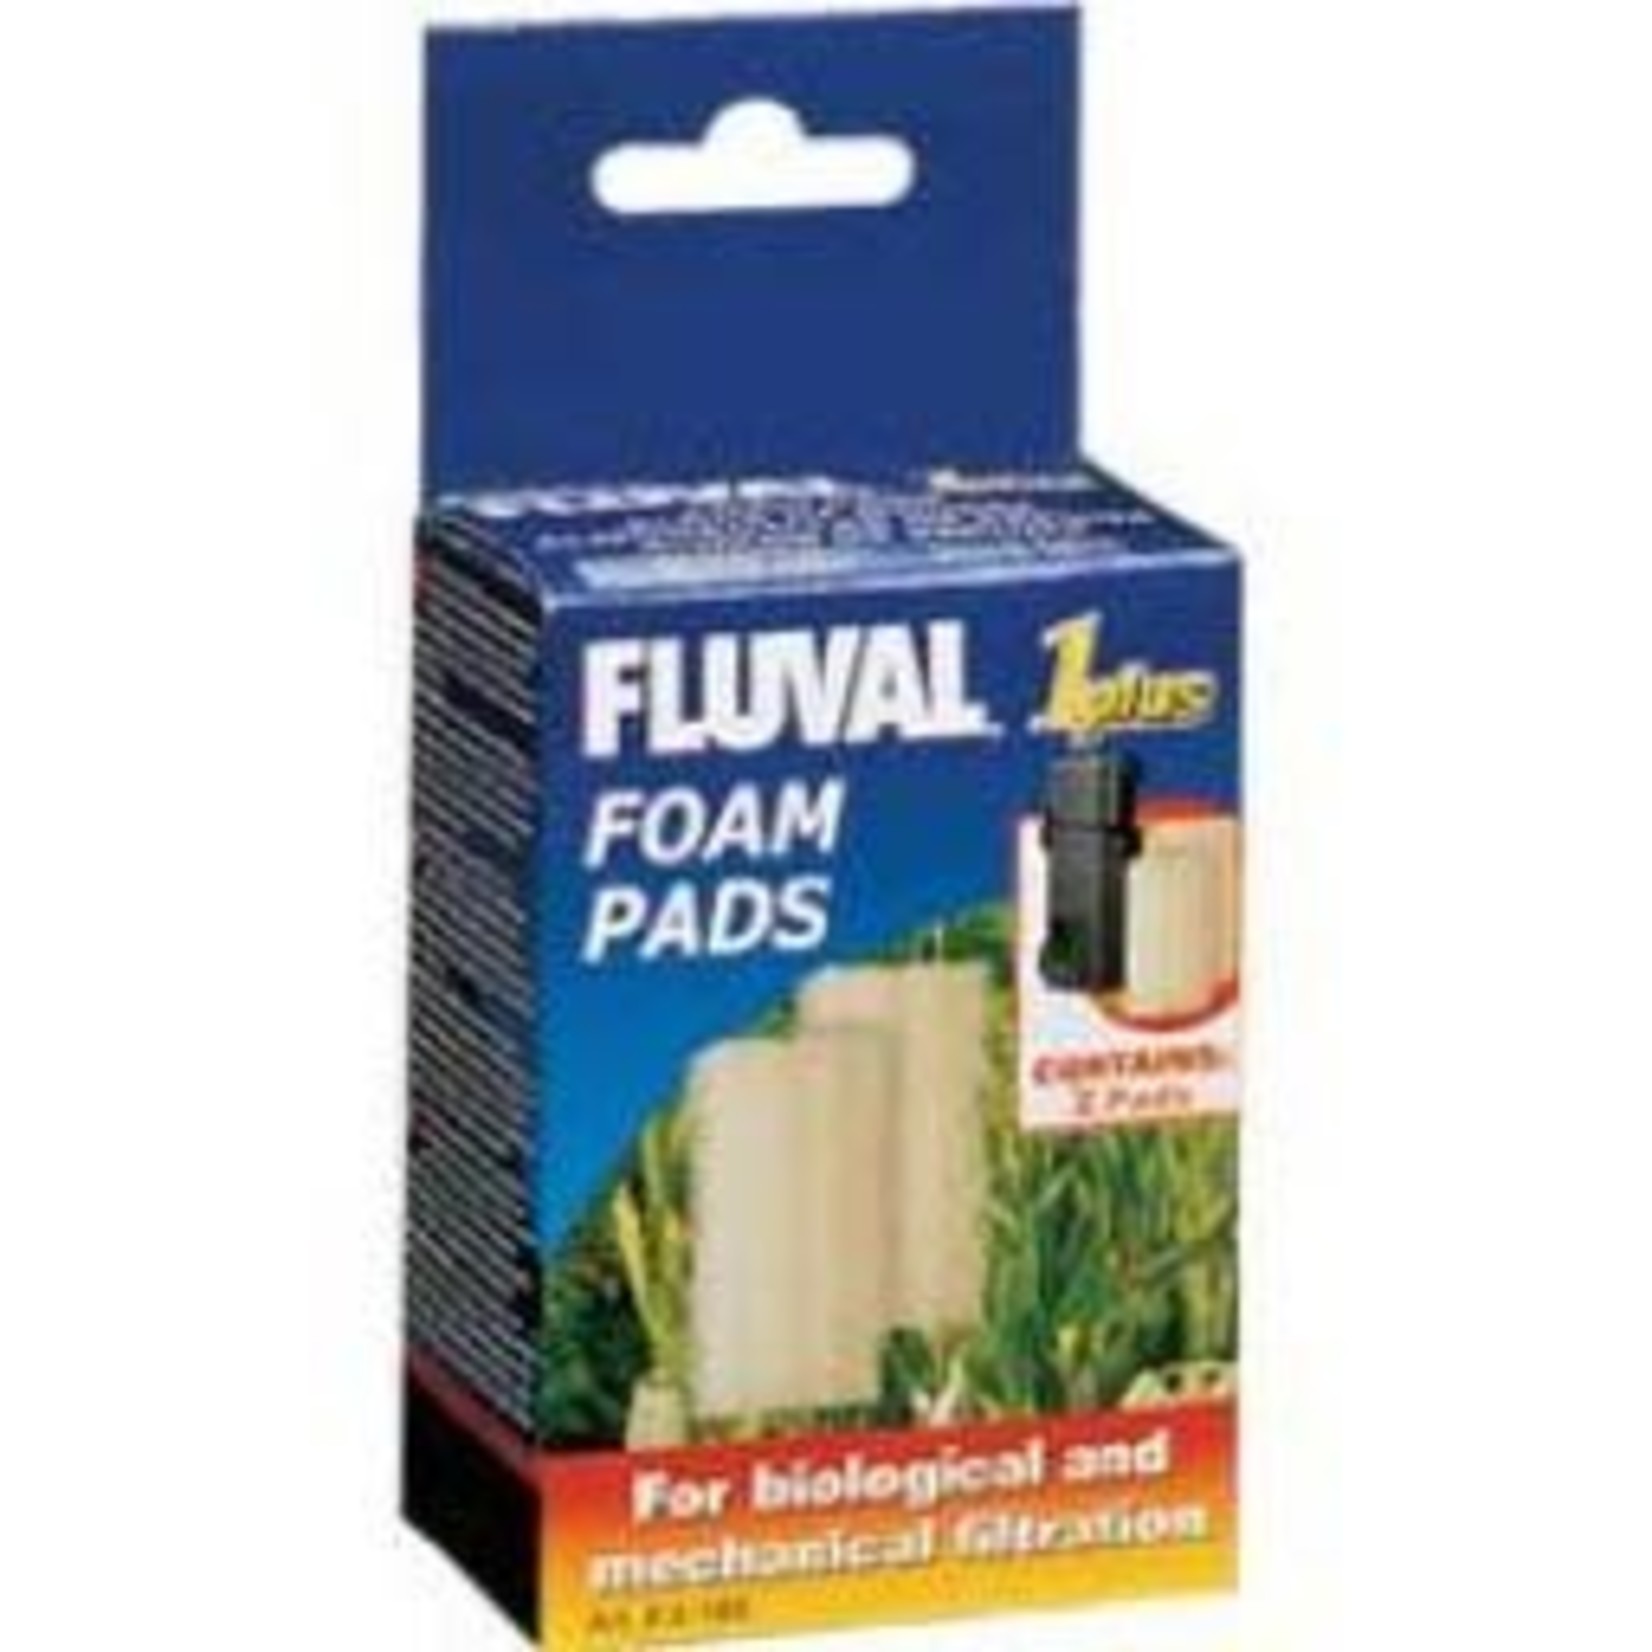 FLUVAL (D) Fluval 1 Plus Foam insert, CA & US-V